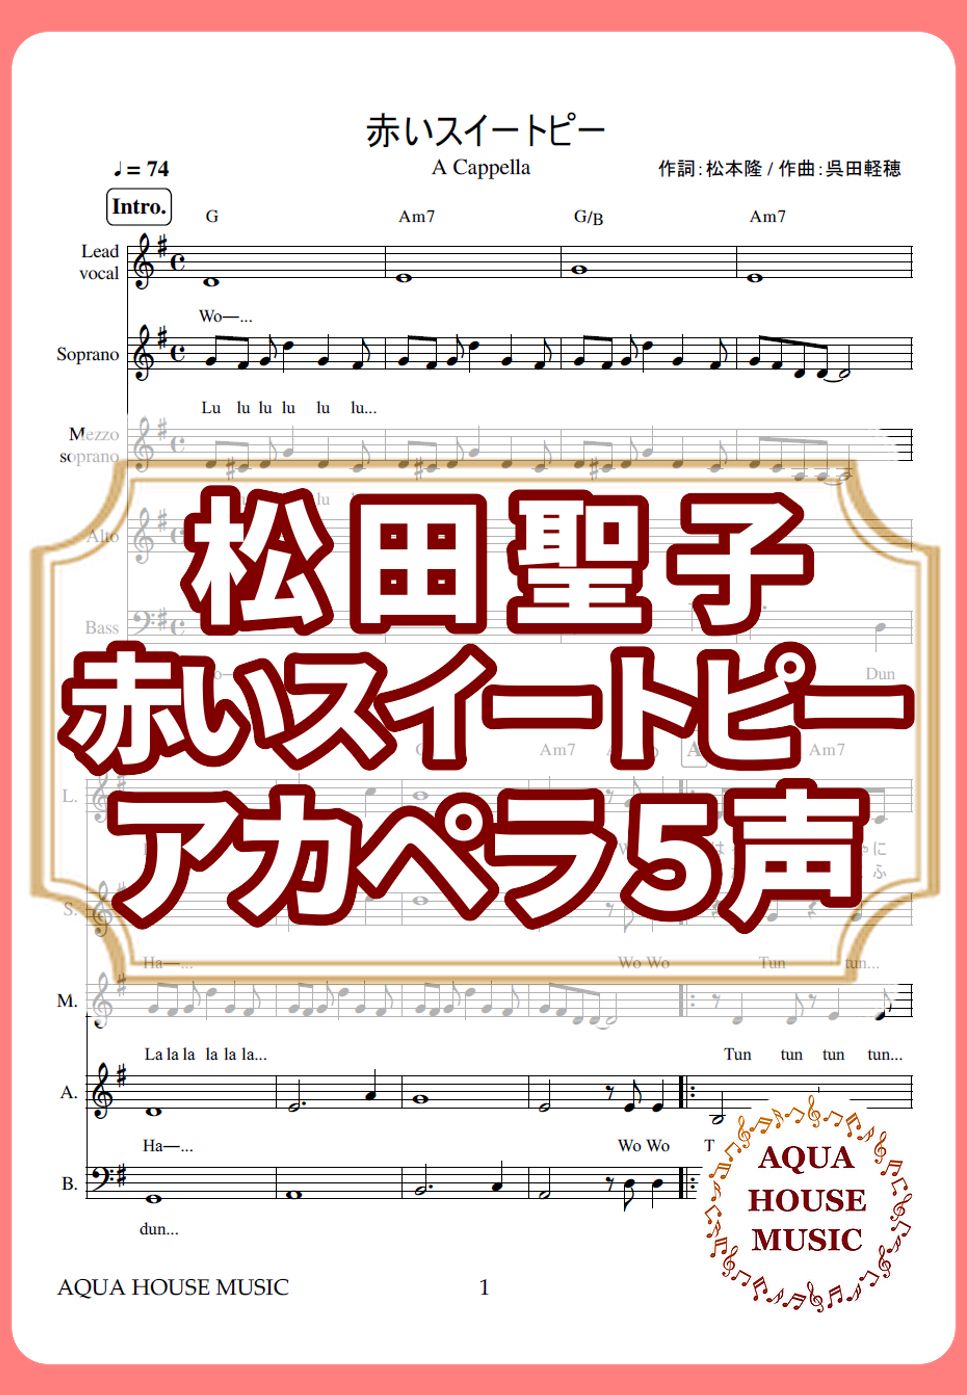 松田聖子 - 赤いスイートピー (アカペラ楽譜♪５声ボイパなし) by 飯田 亜紗子